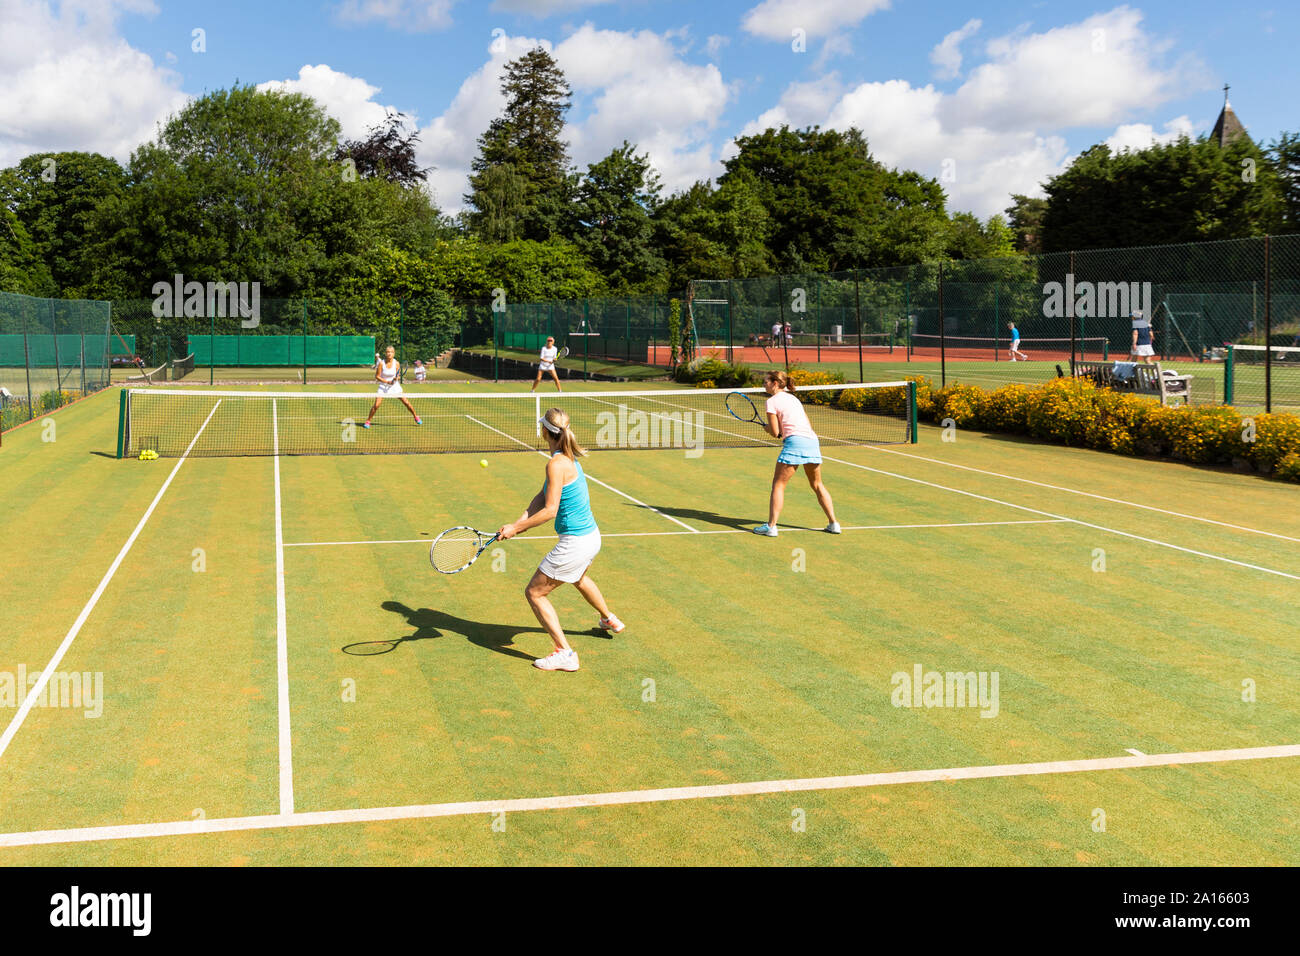 Reife Frauen bei einem Tennismatch auf Gras Hof Stockfoto